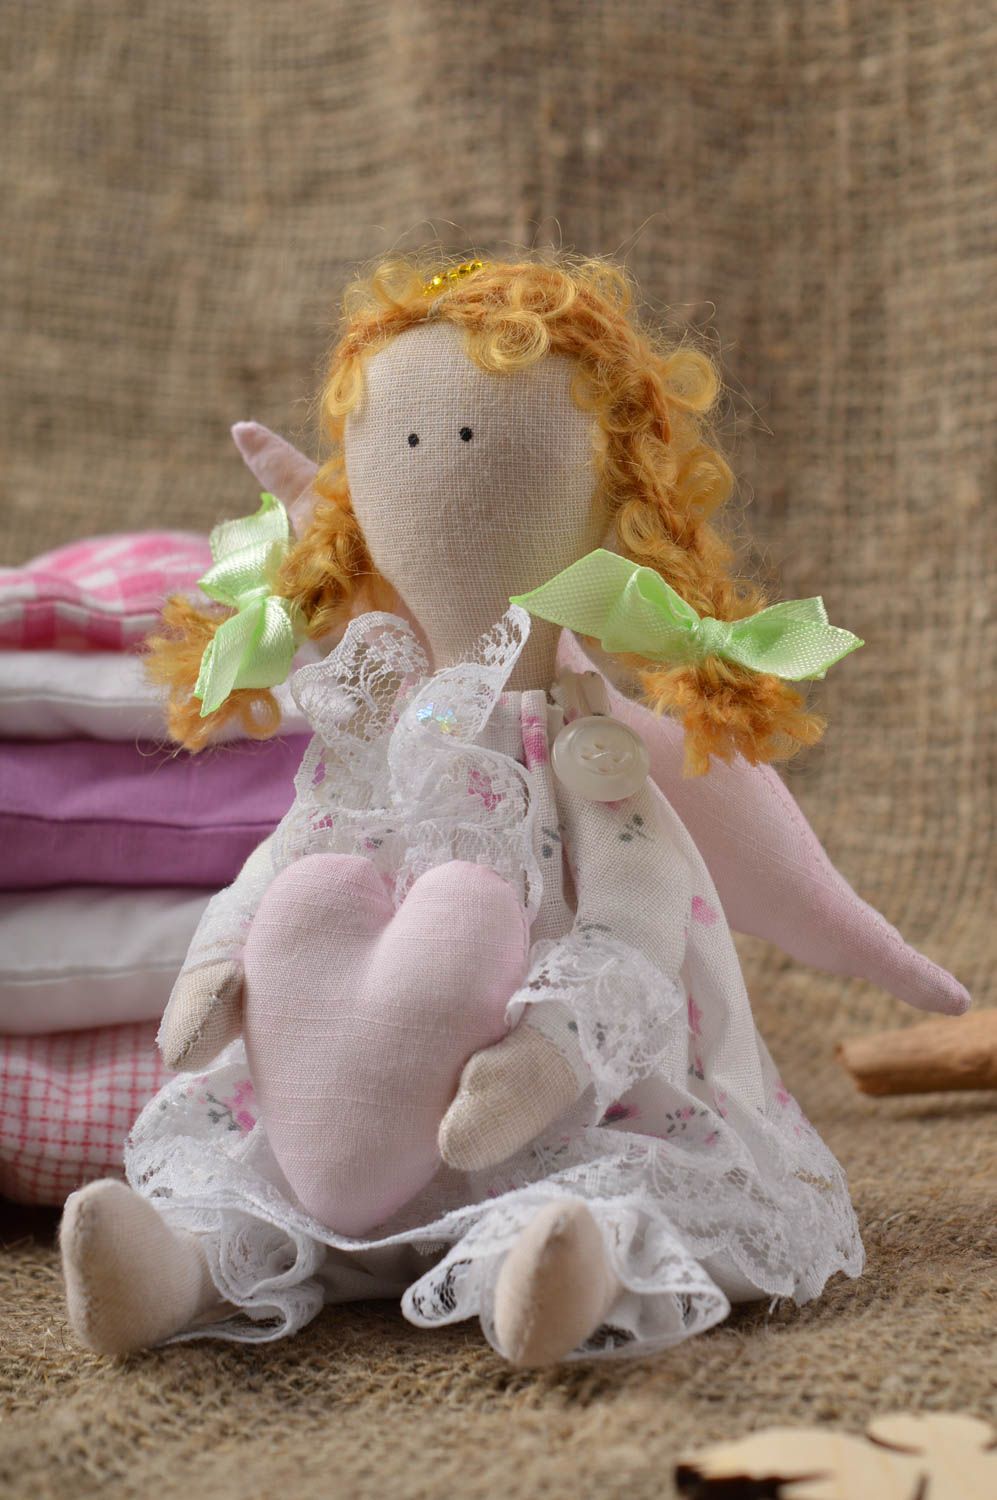 Handmade doll designer doll for baby fabric doll gift for girl nursery decor photo 1